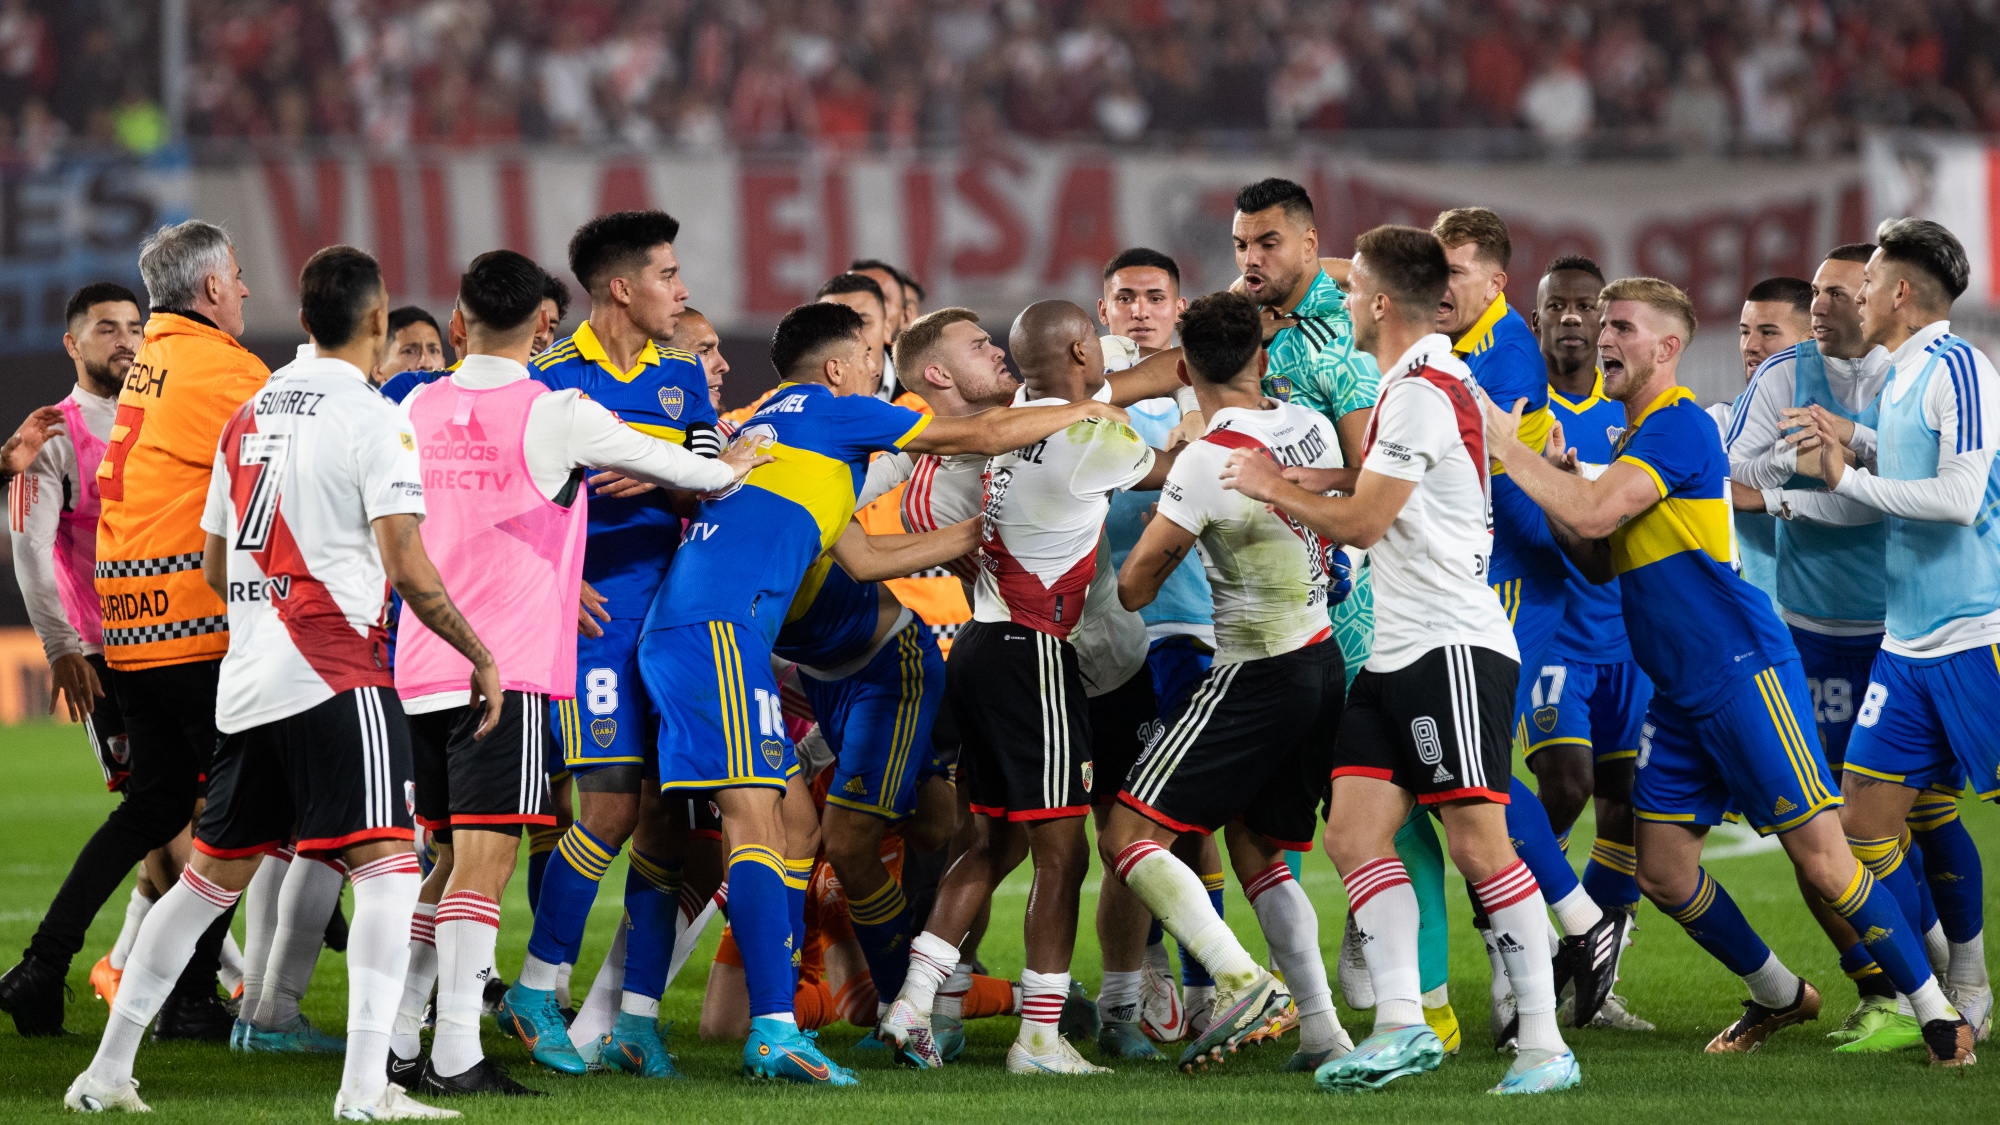 River Plate vs Boca Juniors superclasioc